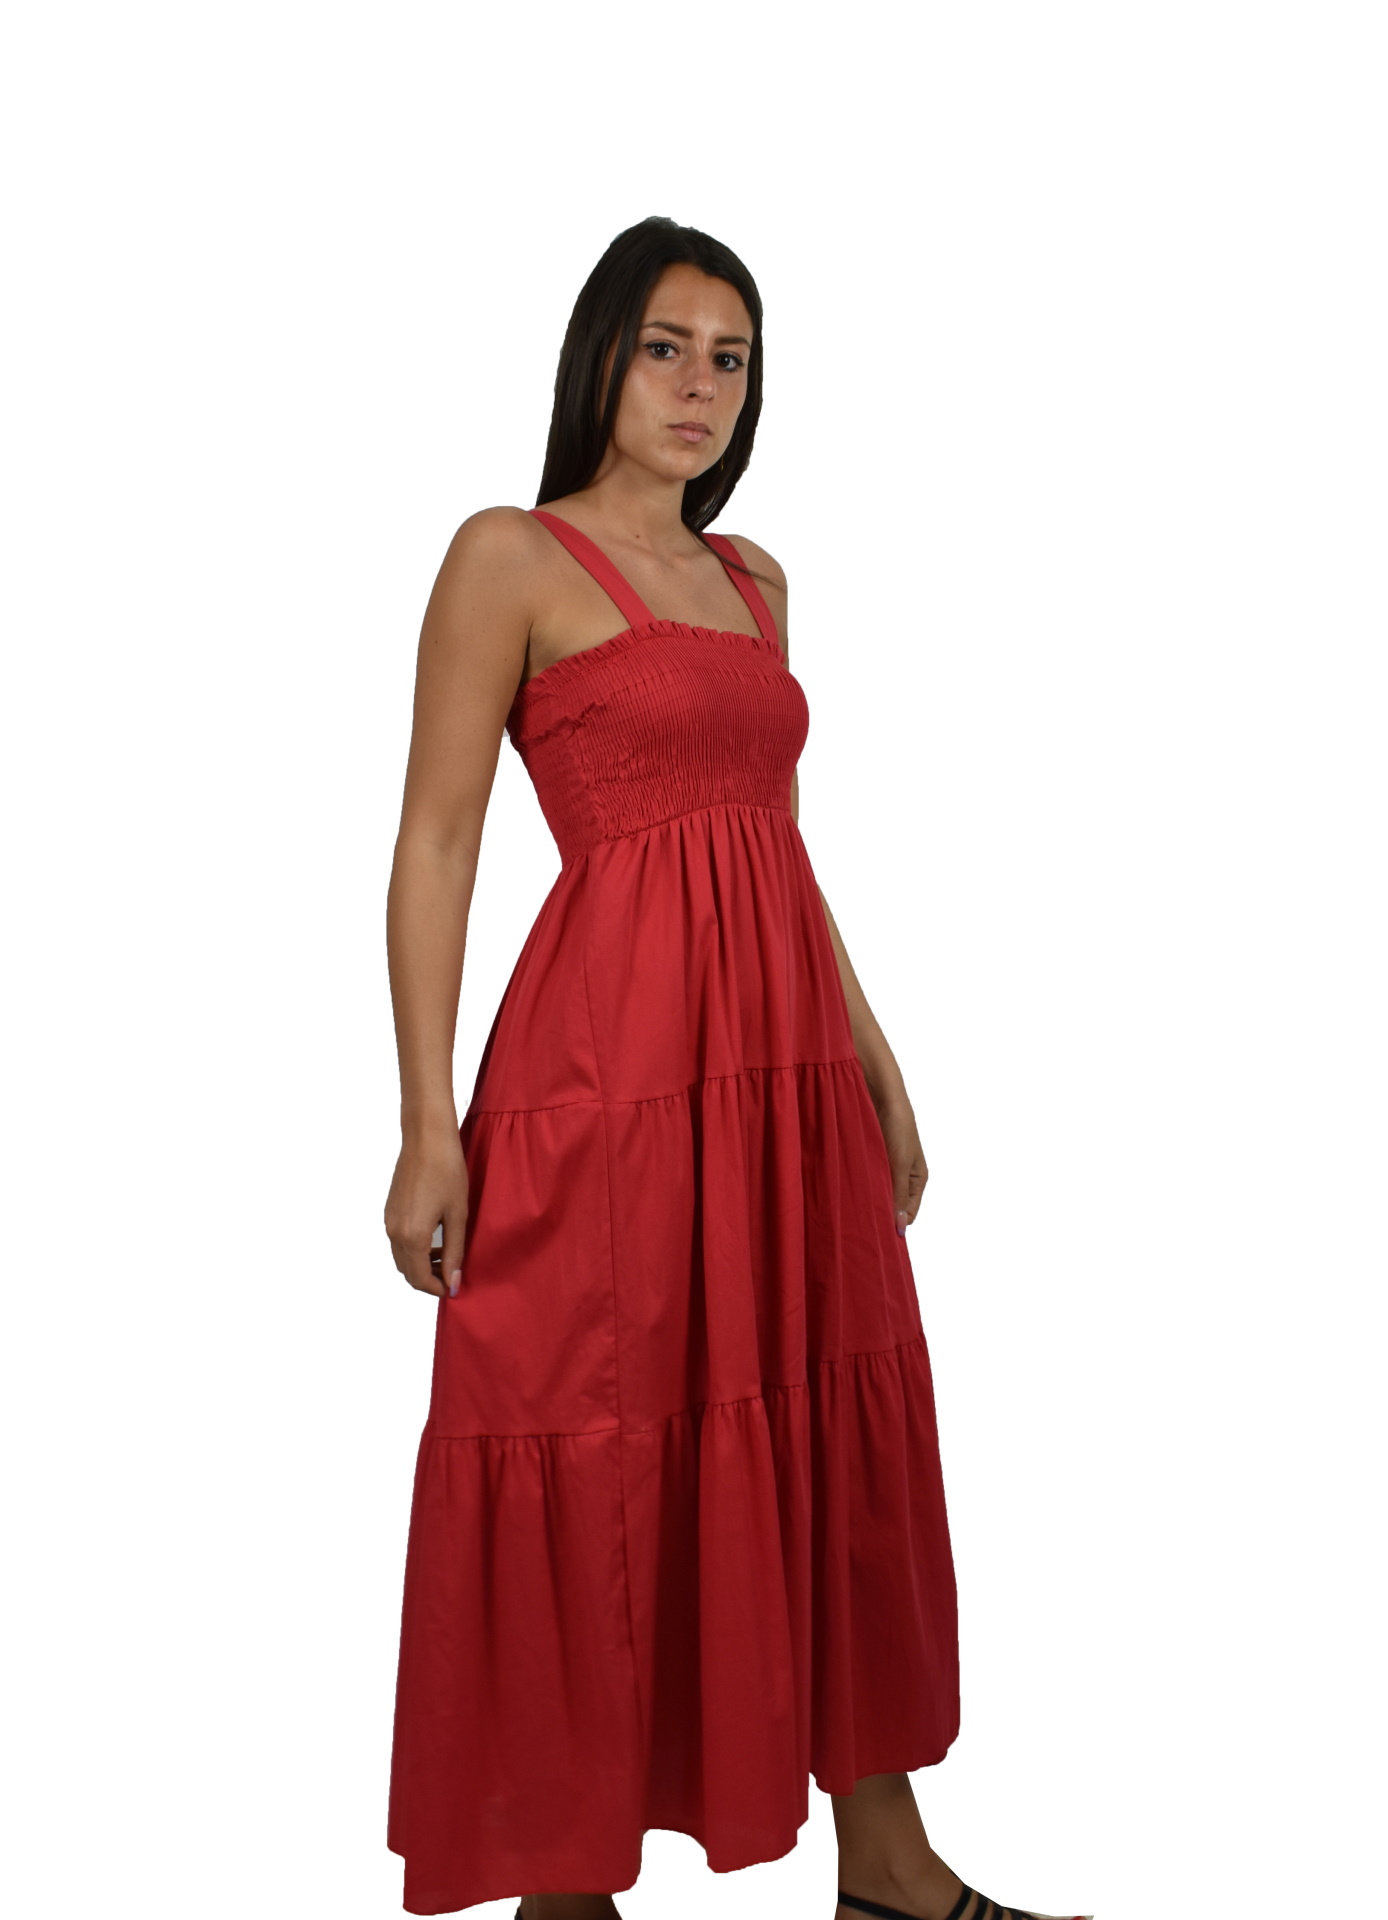 ABIMAXPE2101 ROSSO ABITO LUNGO DA DONNA 100 LINO 2 1stAmerican abito lungo da donna 100% lino Made in Italy - vestito lungo da sera da spiaggia da donna in lino